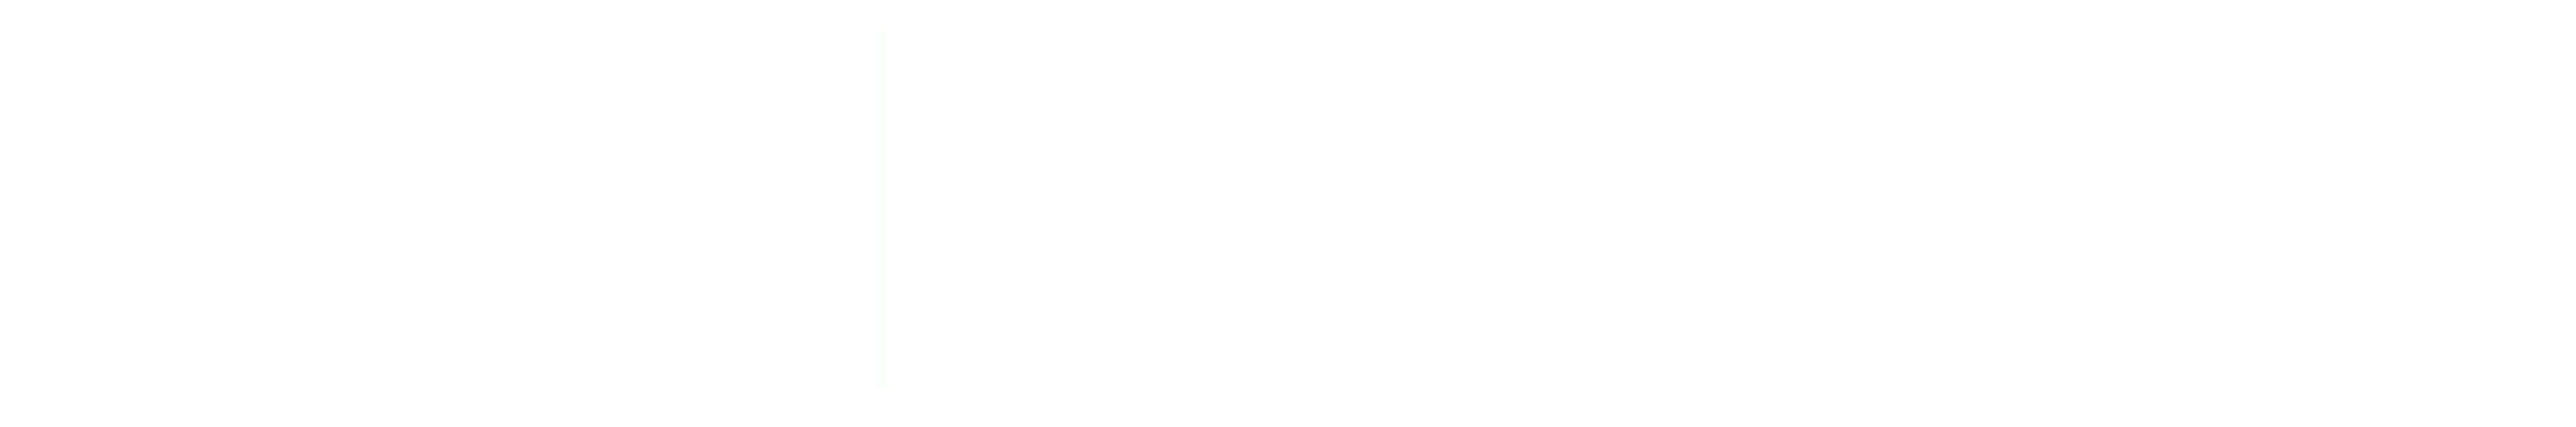 Congreso Internacional de Dermotricología